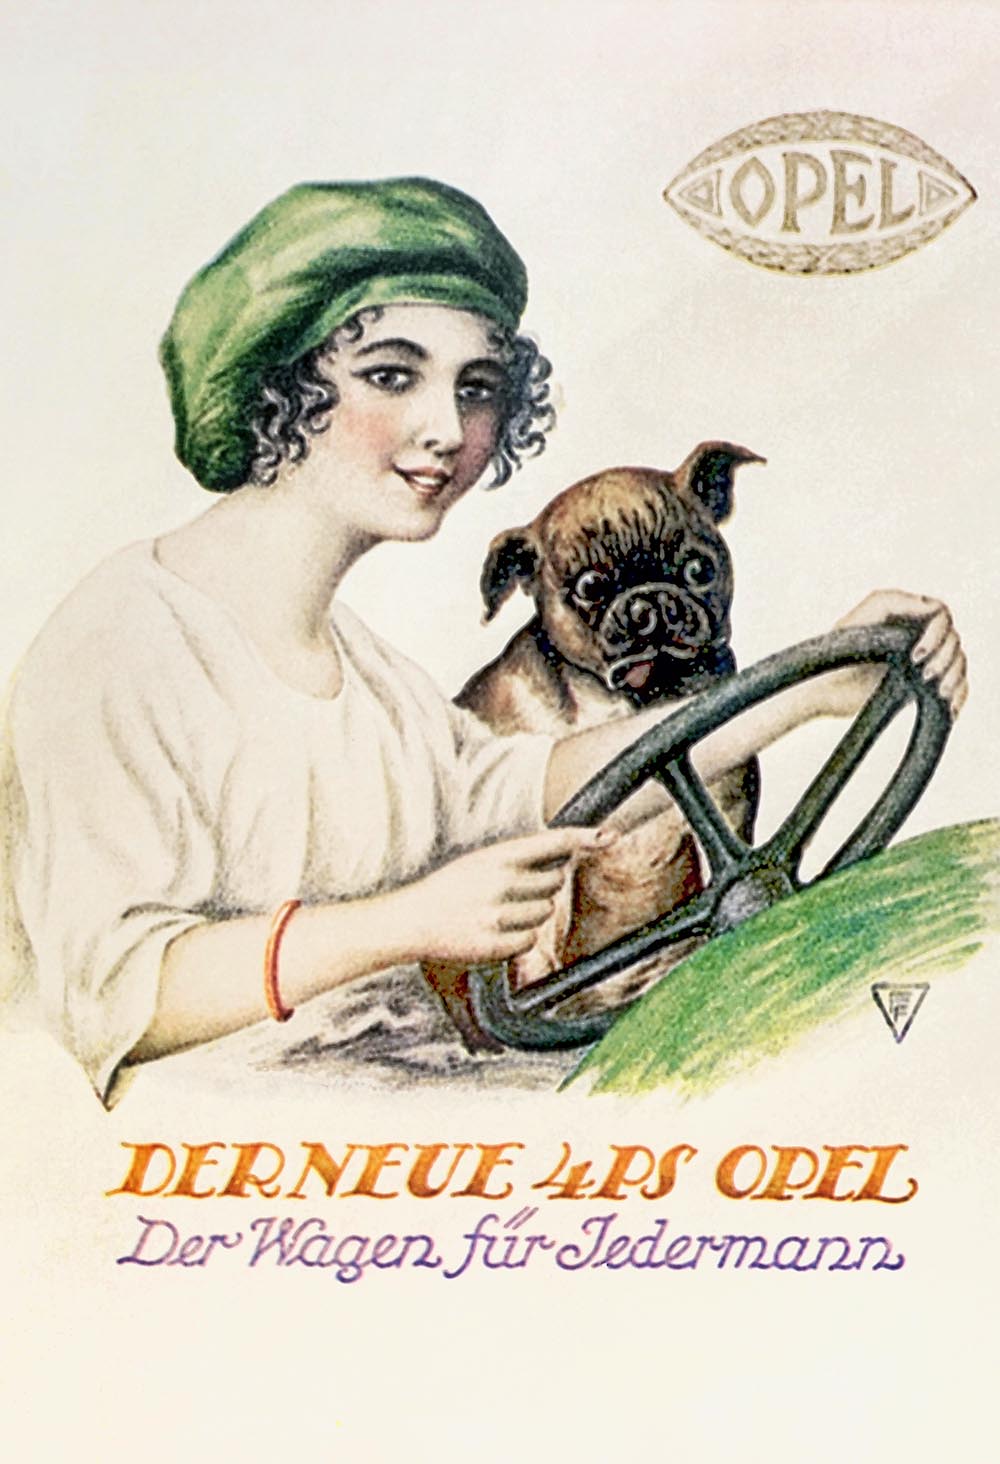  Erstes Fließbandmodell von Opel wird der zweisitzige, grün lackierte Typ 4/12 PS „Laubfrosch“. Hier eine Werbung aus 1924.